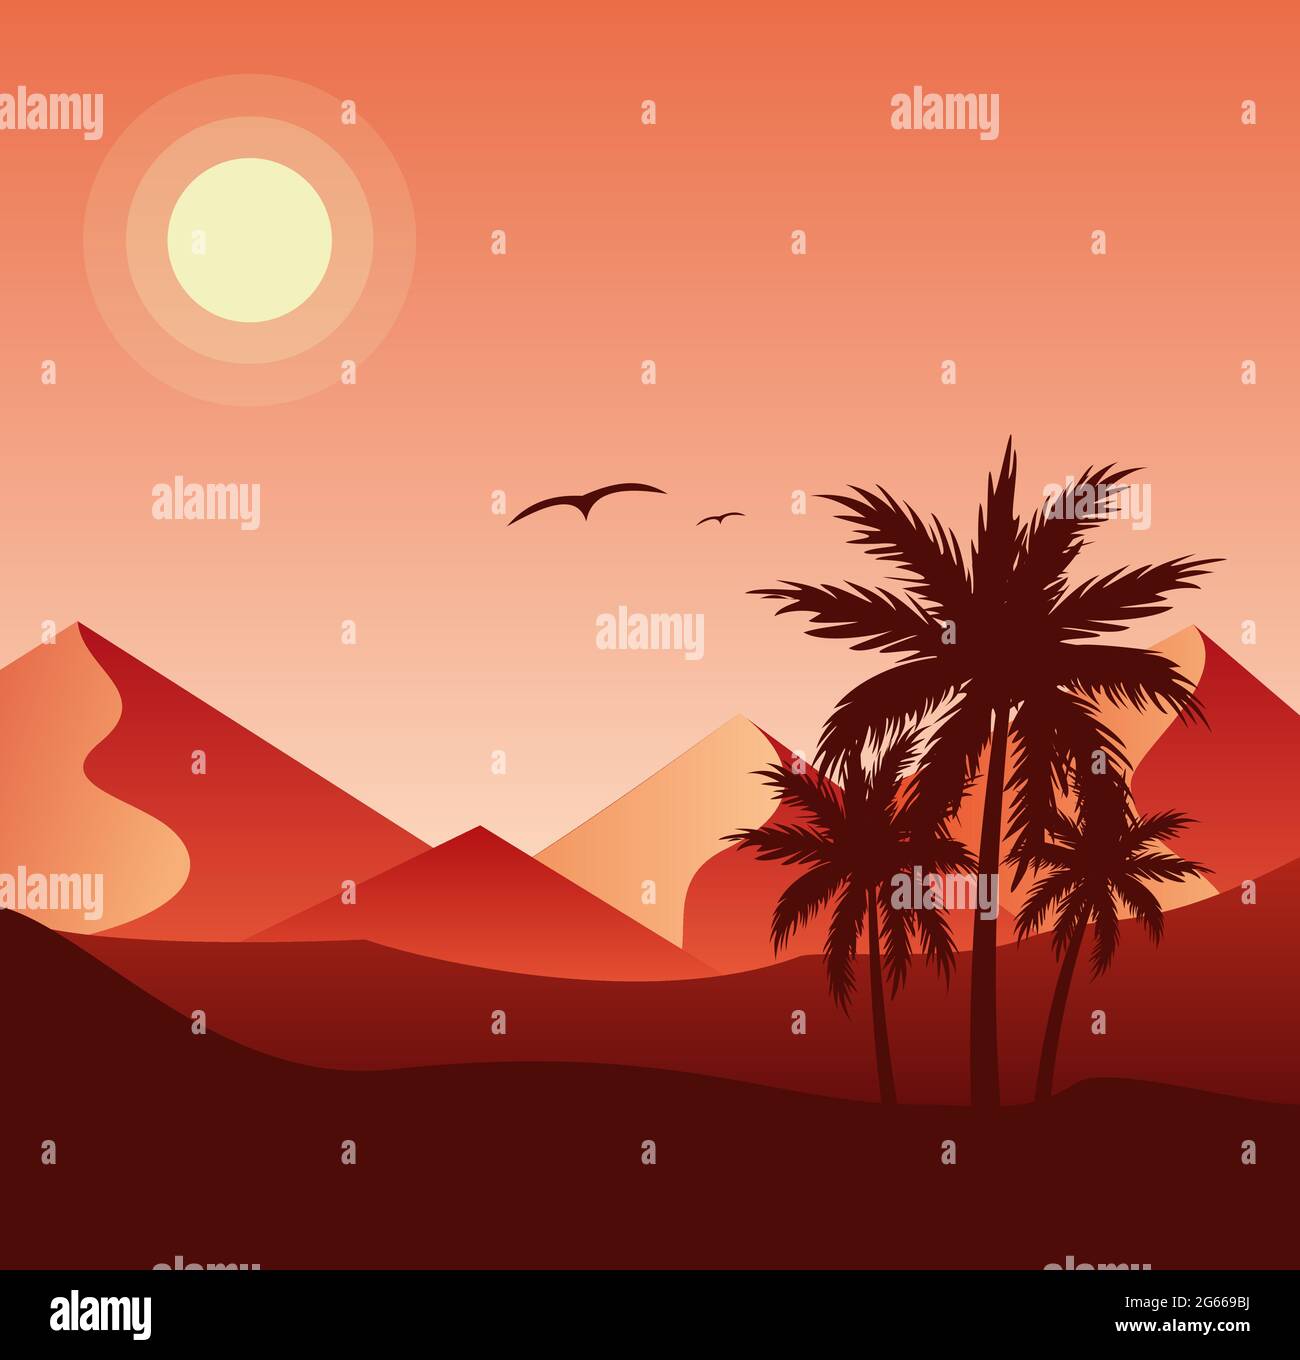 Coucher de soleil dans le désert illustration vectorielle plate colorée Illustration de Vecteur